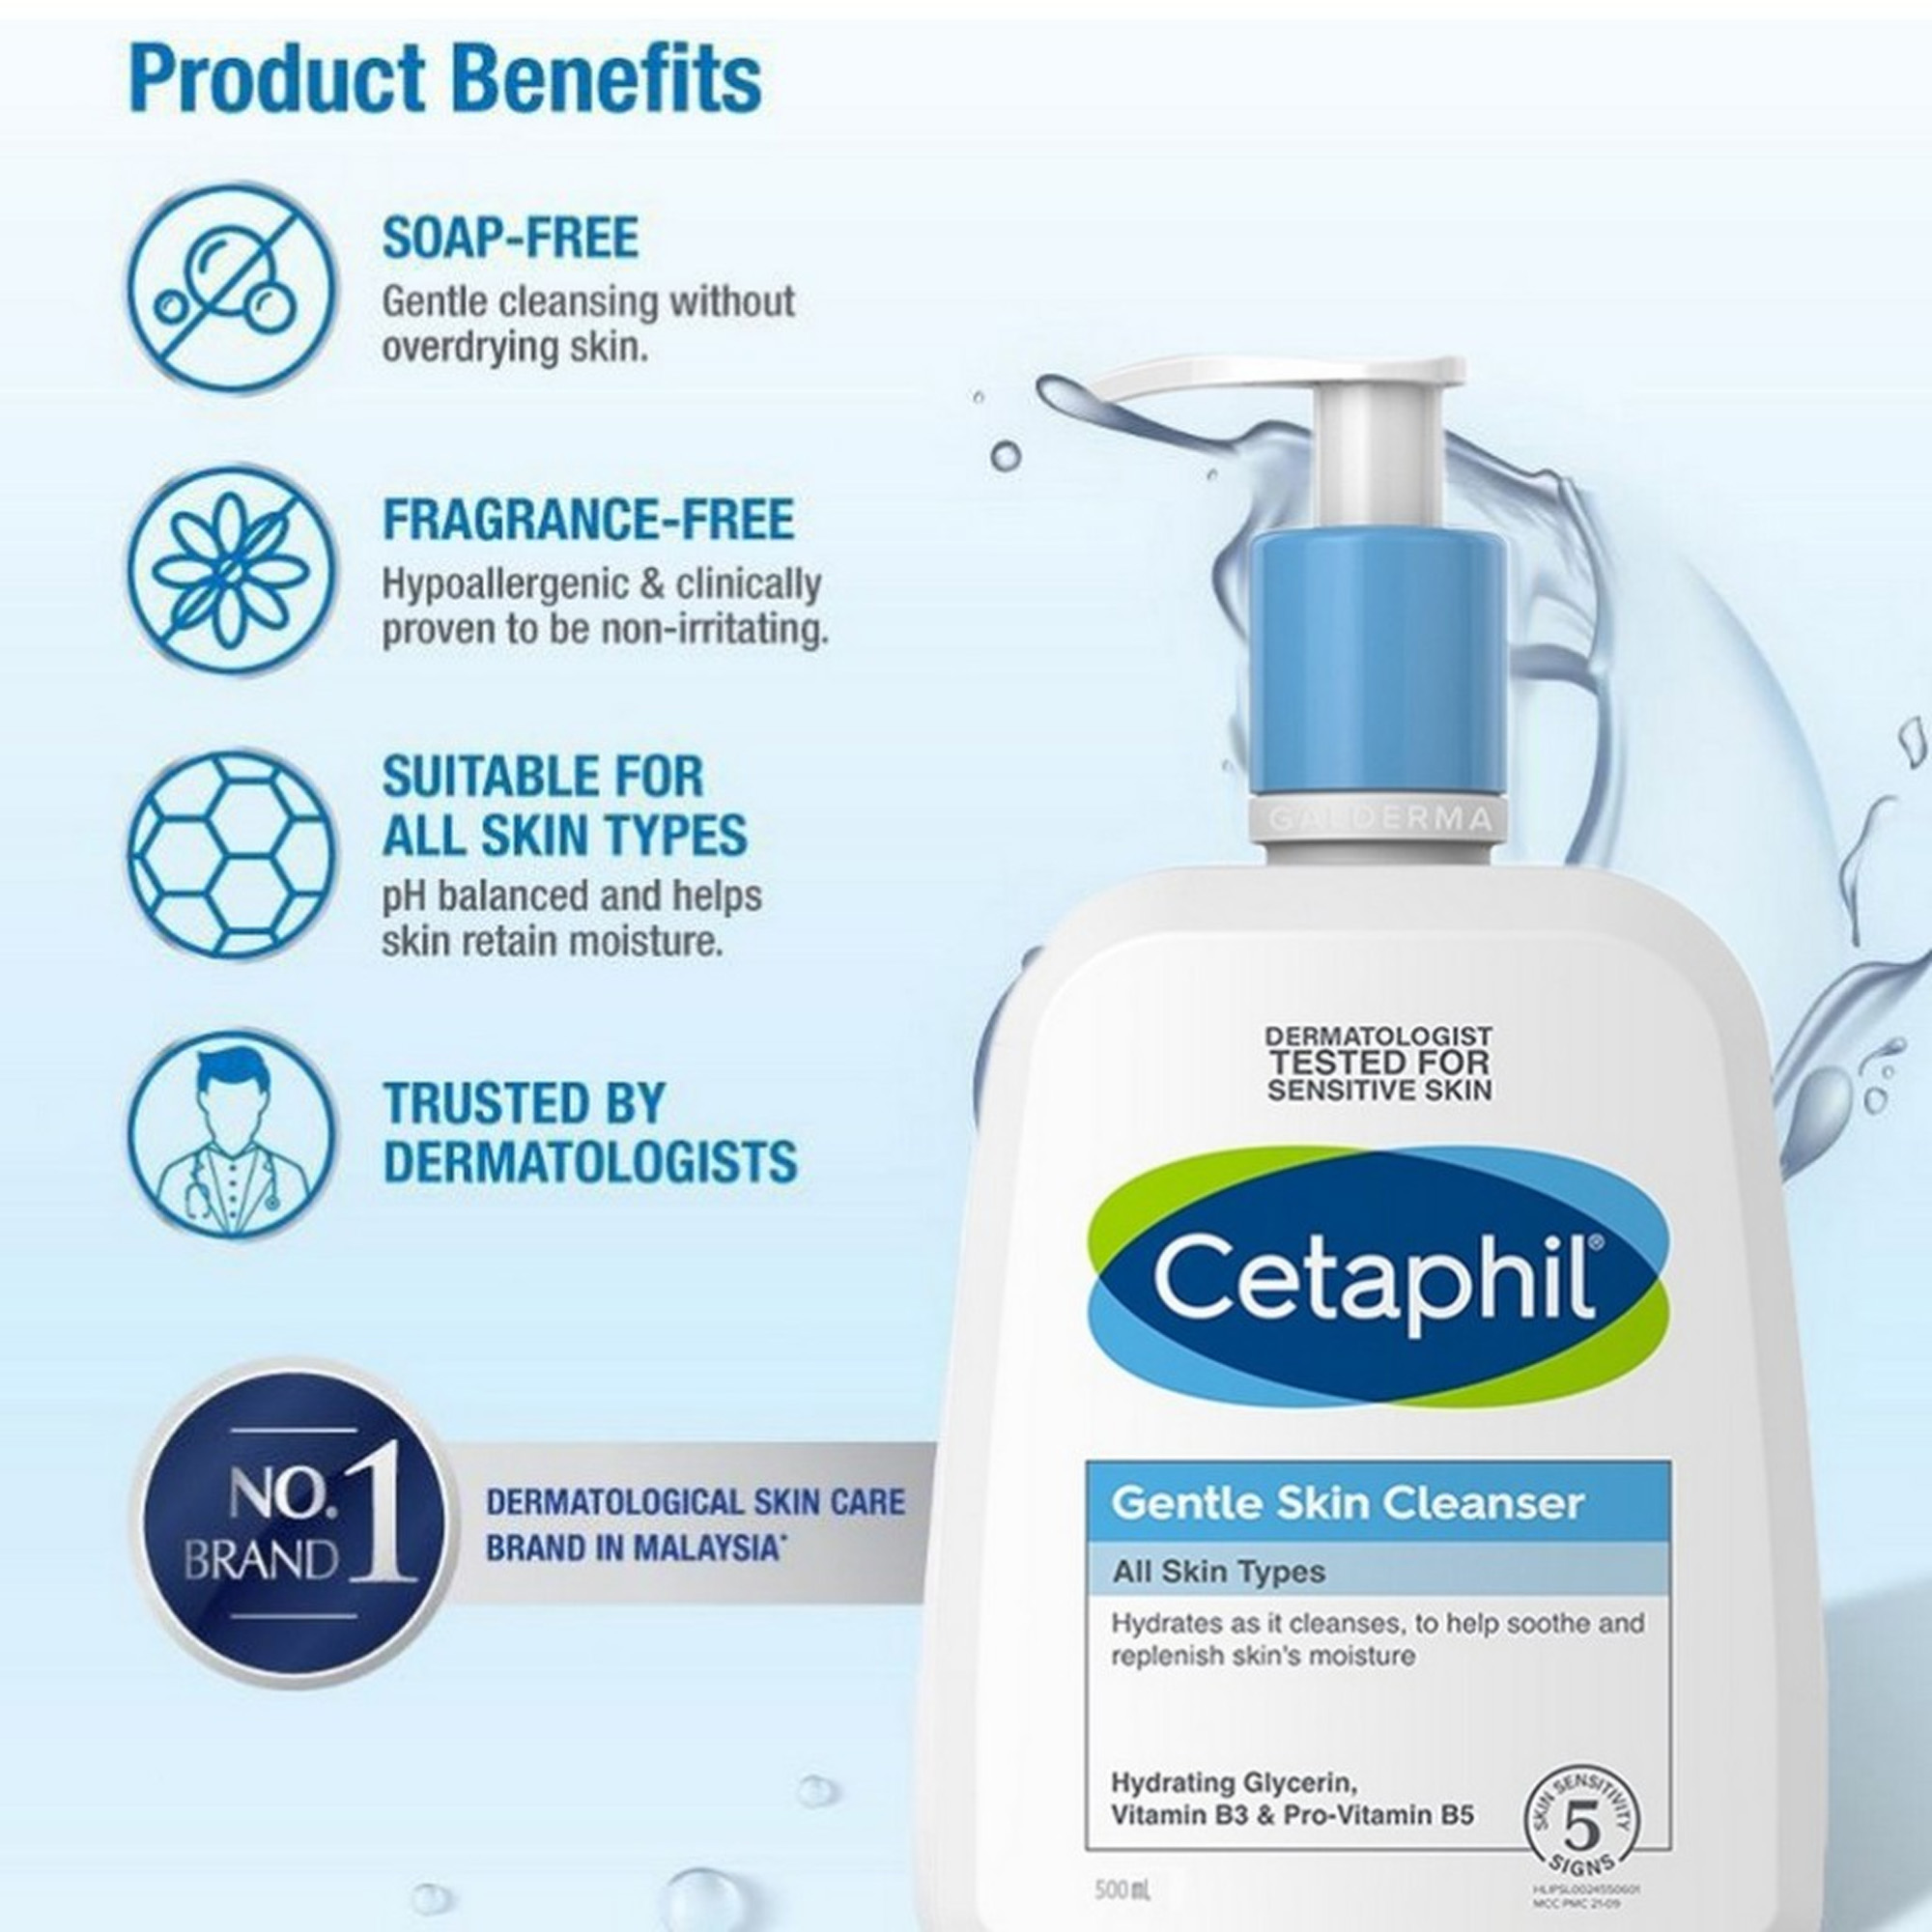 cetaphil-gentle-skin-cleanser-02.jpg